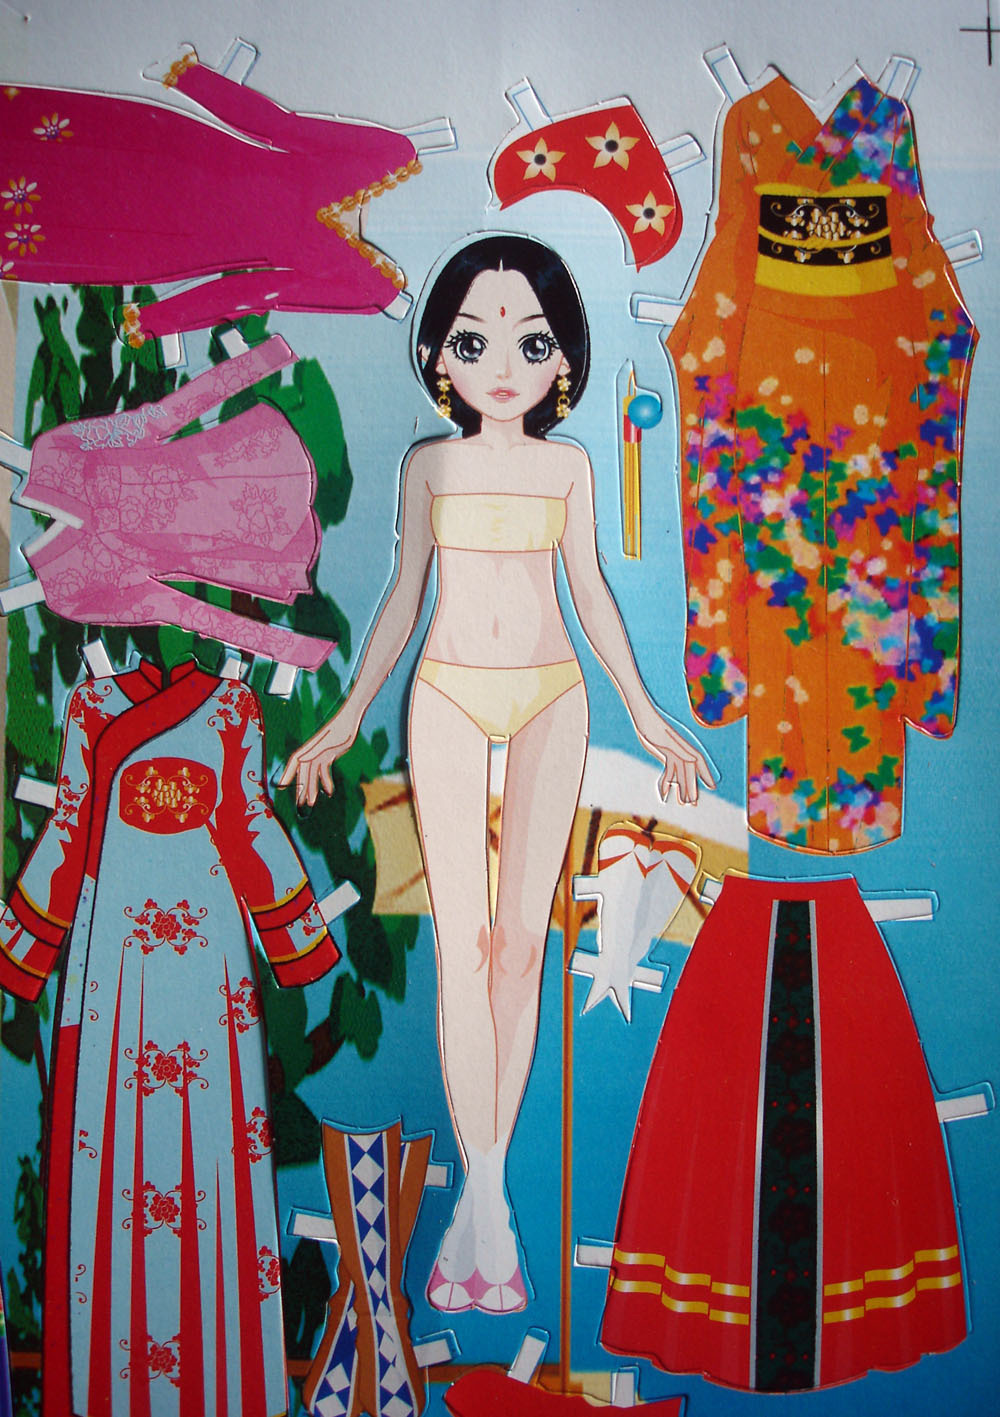 Miss Missy Paper Dolls: Dress up Games Paper dolls